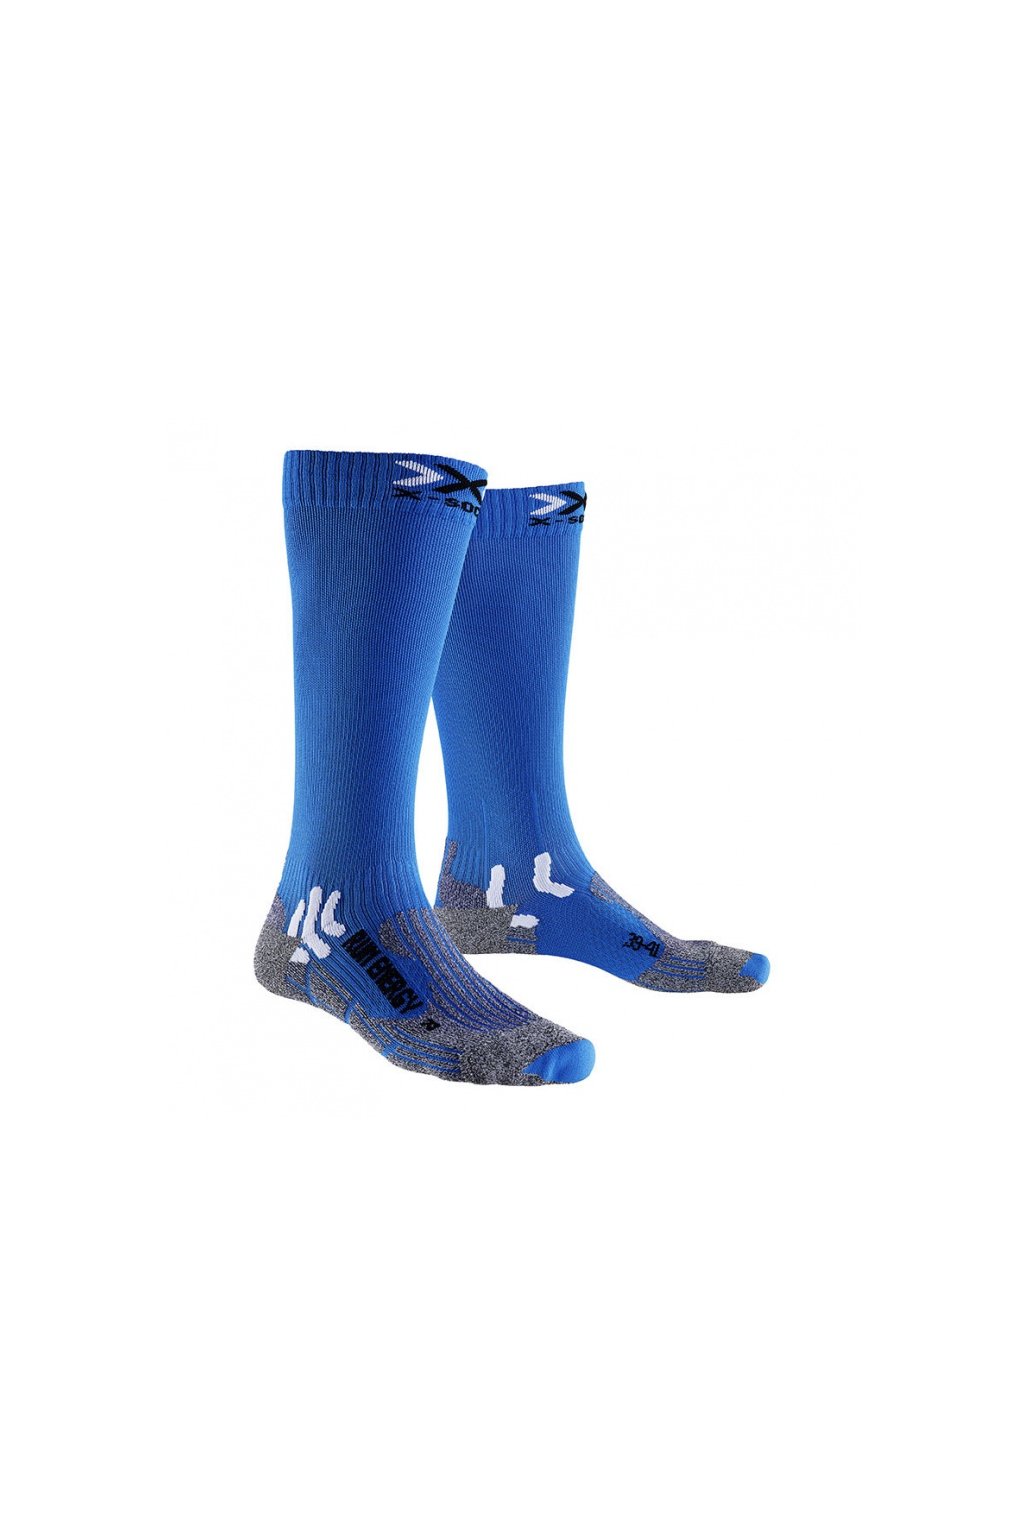 X-Bionic-ponožky RUN ENERGIZER french blue